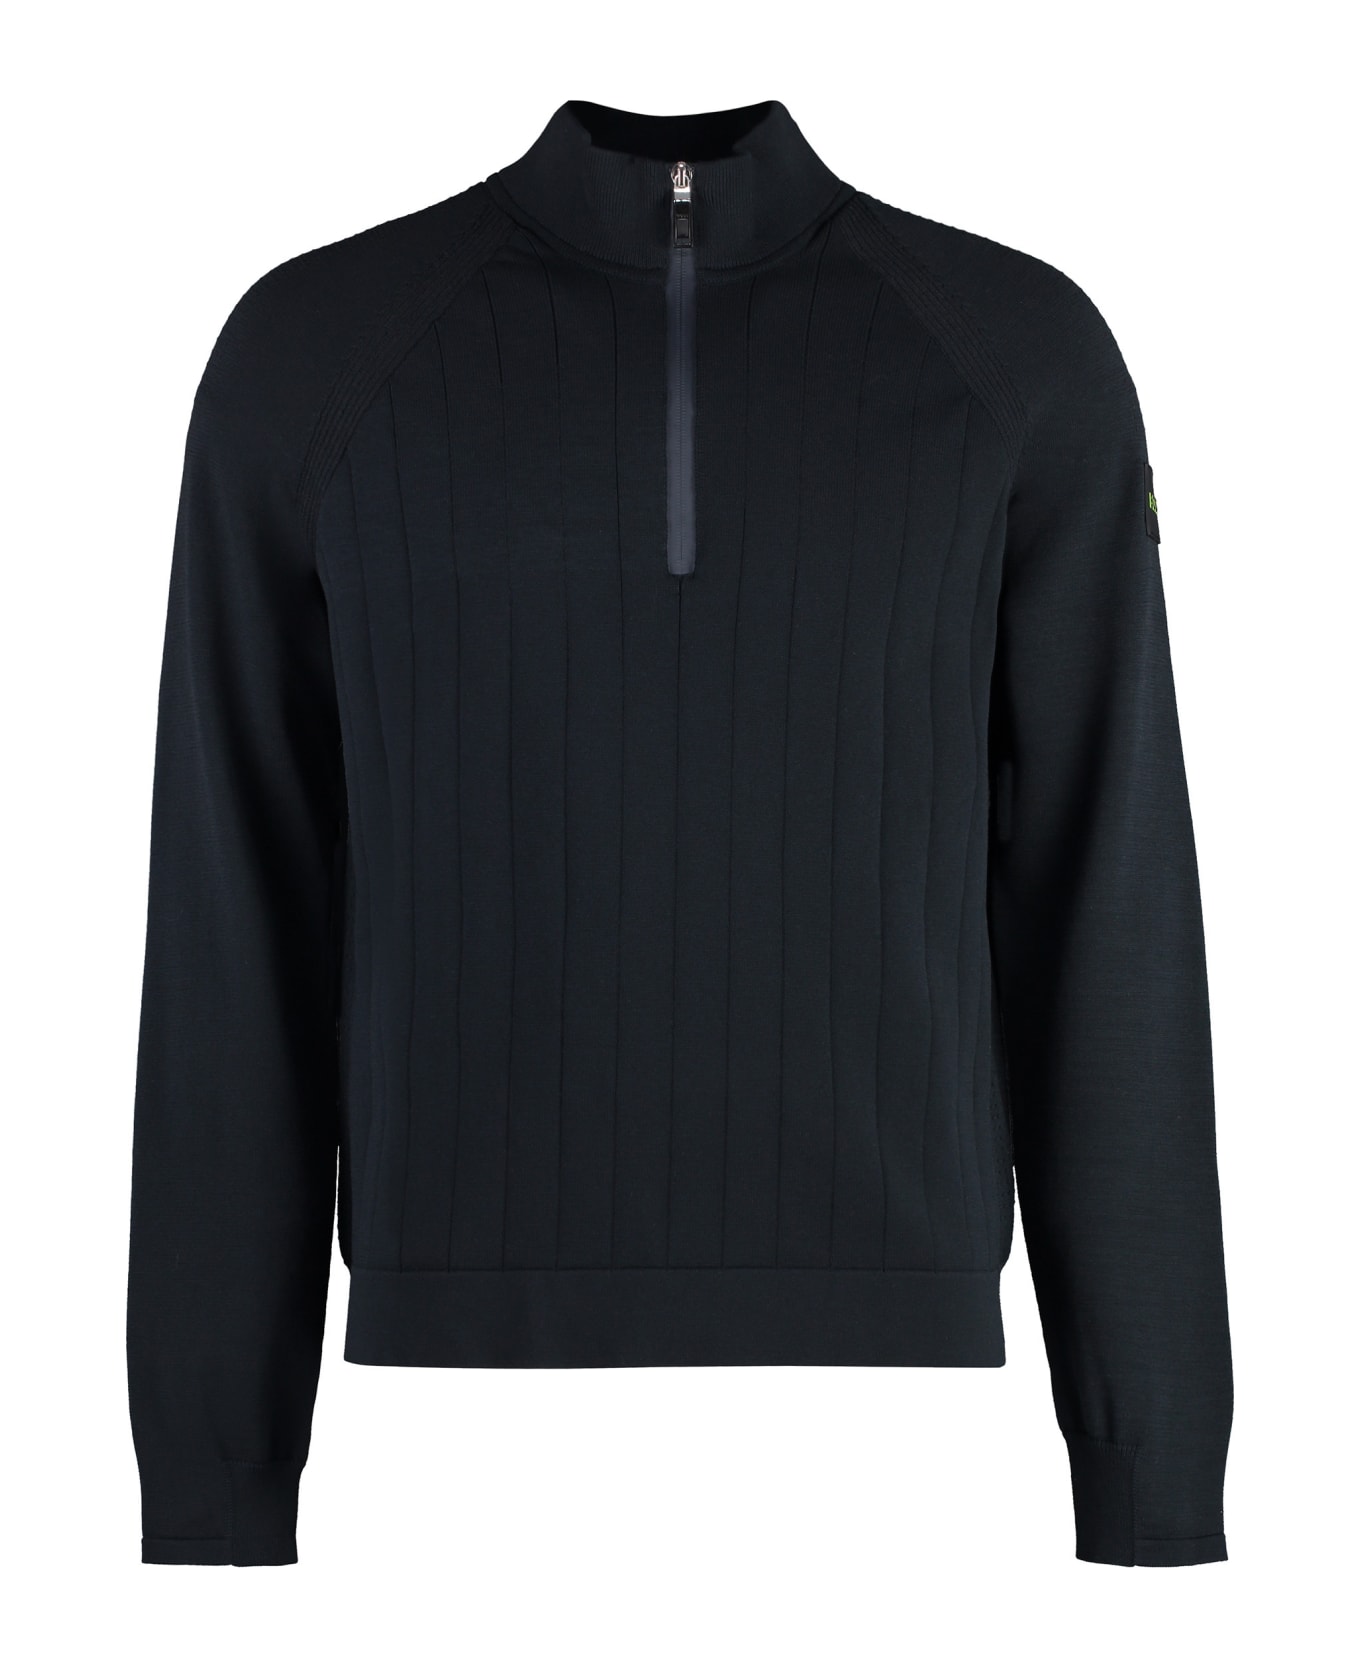 Hugo Boss Cotton Blend Turtleneck Sweater - blue ニットウェア